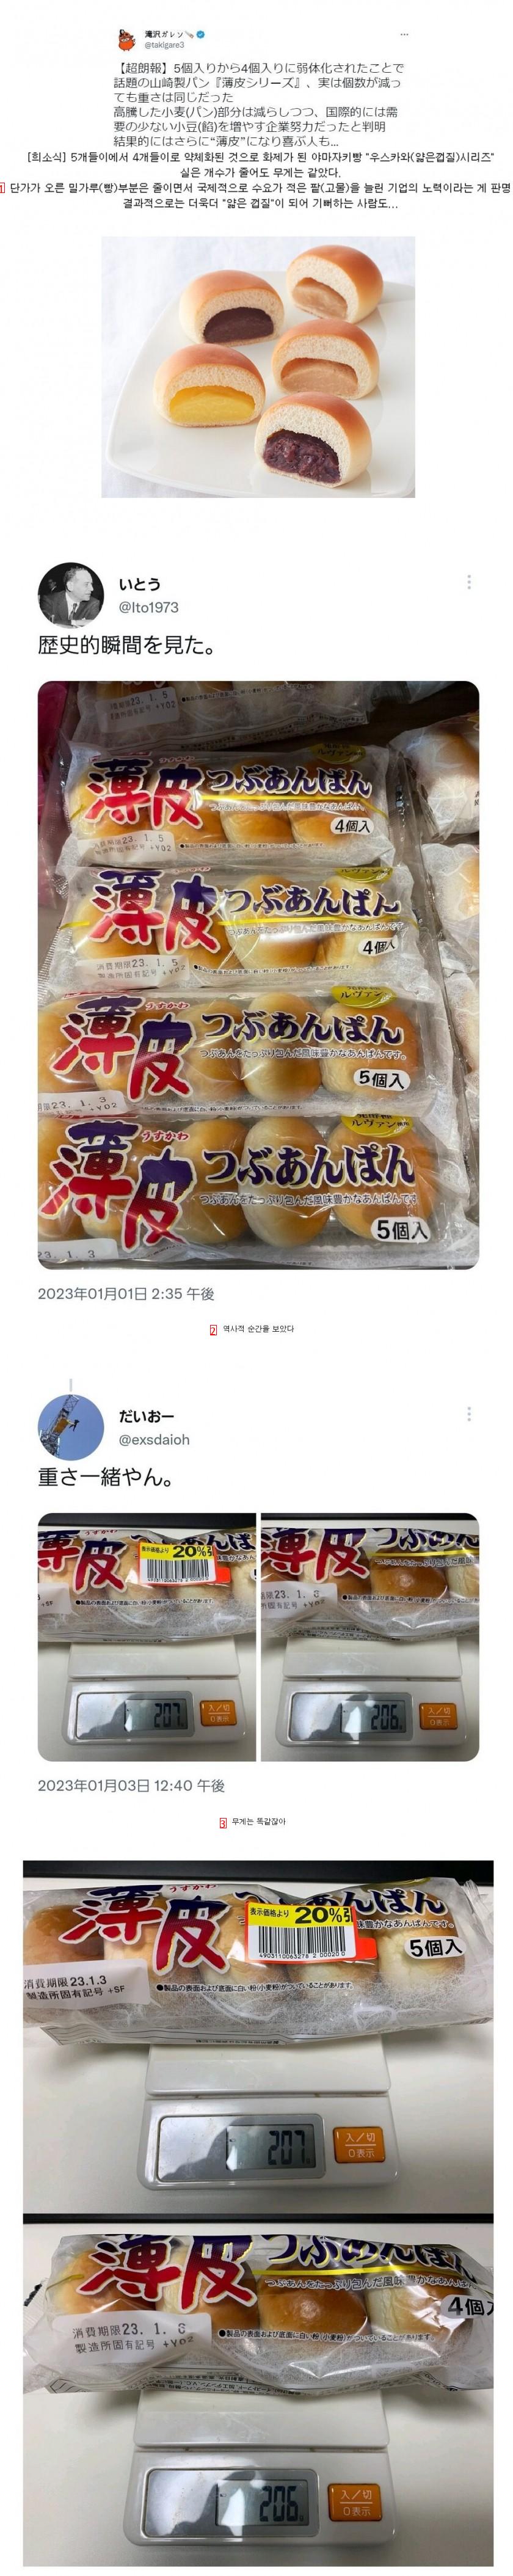 原材料価格が上昇した日本の製菓業界